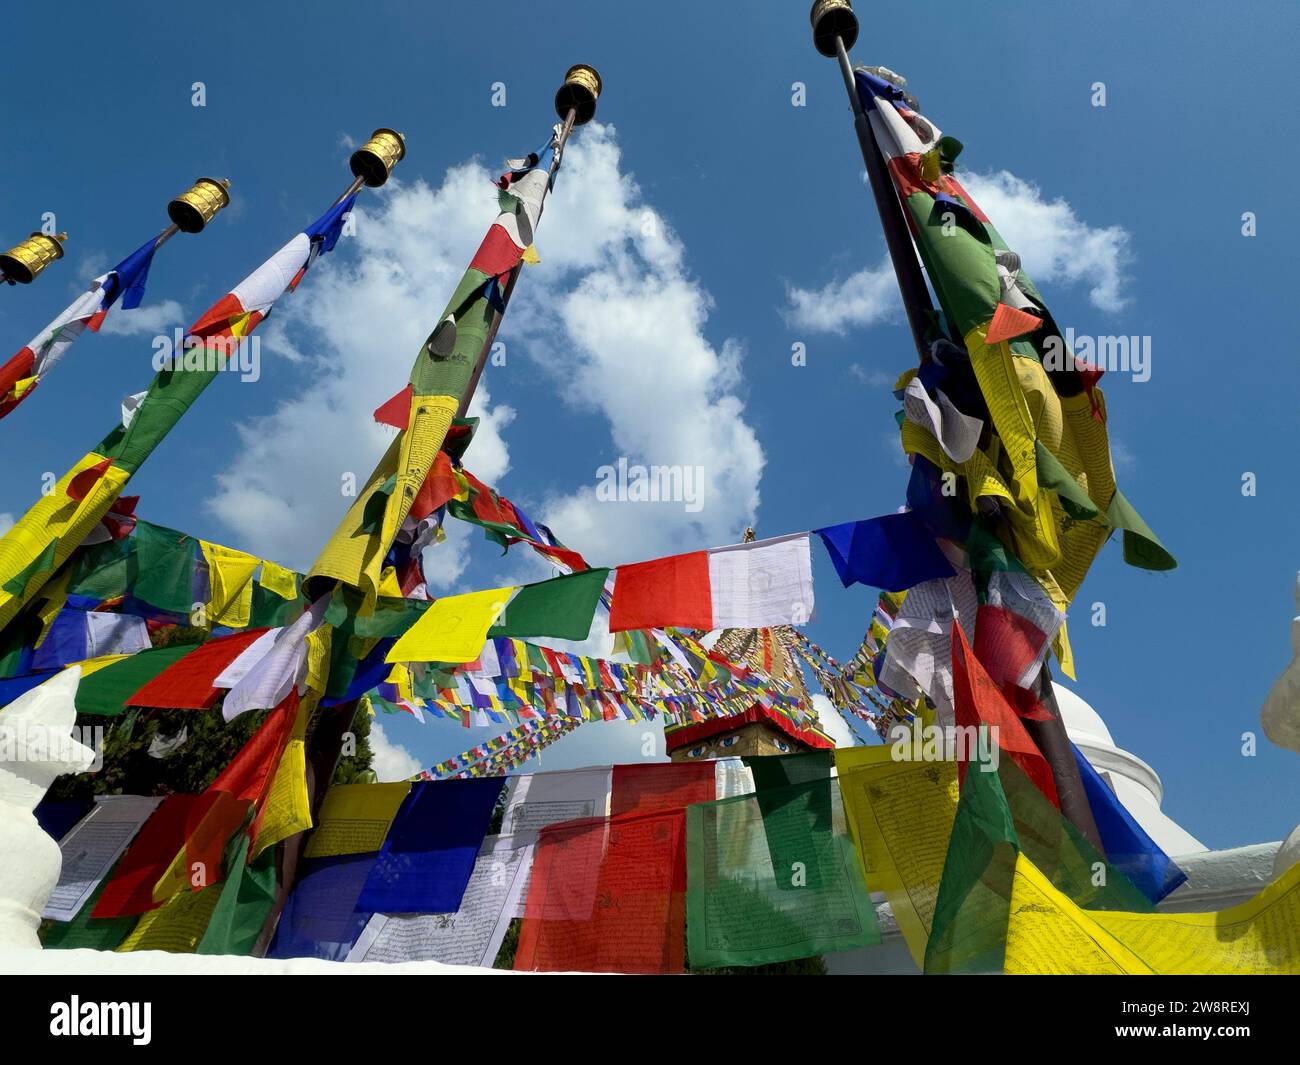 Buddhist prayer flags fly at Bodhanath Stupa - Kathmandu, Nepal Stock Photo